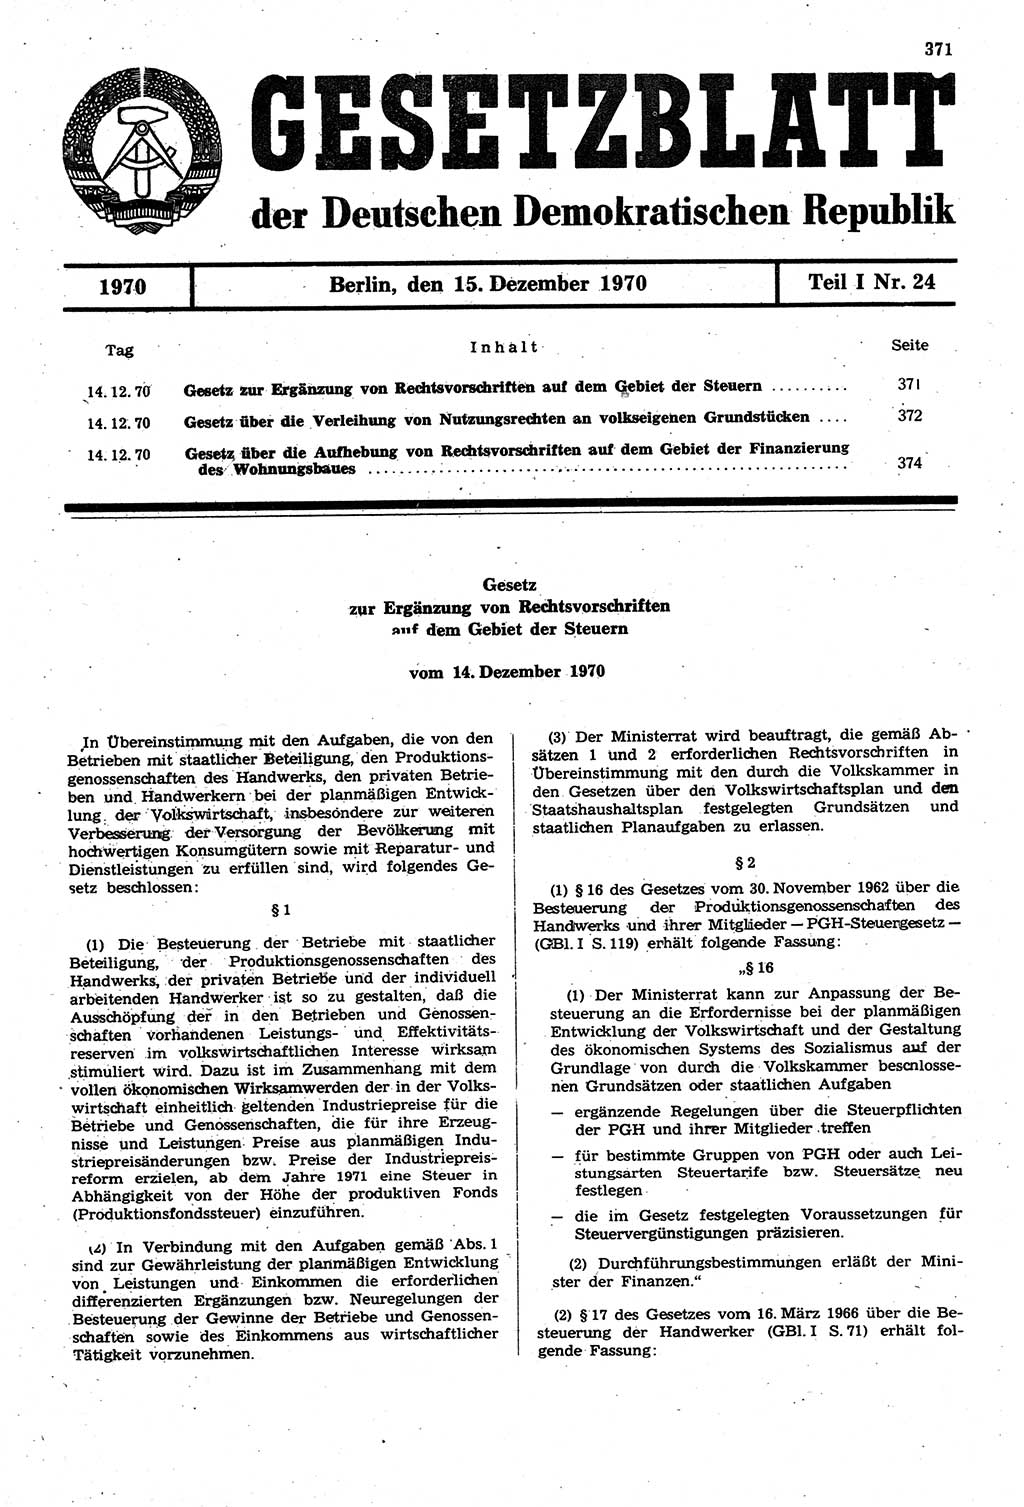 Gesetzblatt (GBl.) der Deutschen Demokratischen Republik (DDR) Teil Ⅰ 1970, Seite 371 (GBl. DDR Ⅰ 1970, S. 371)